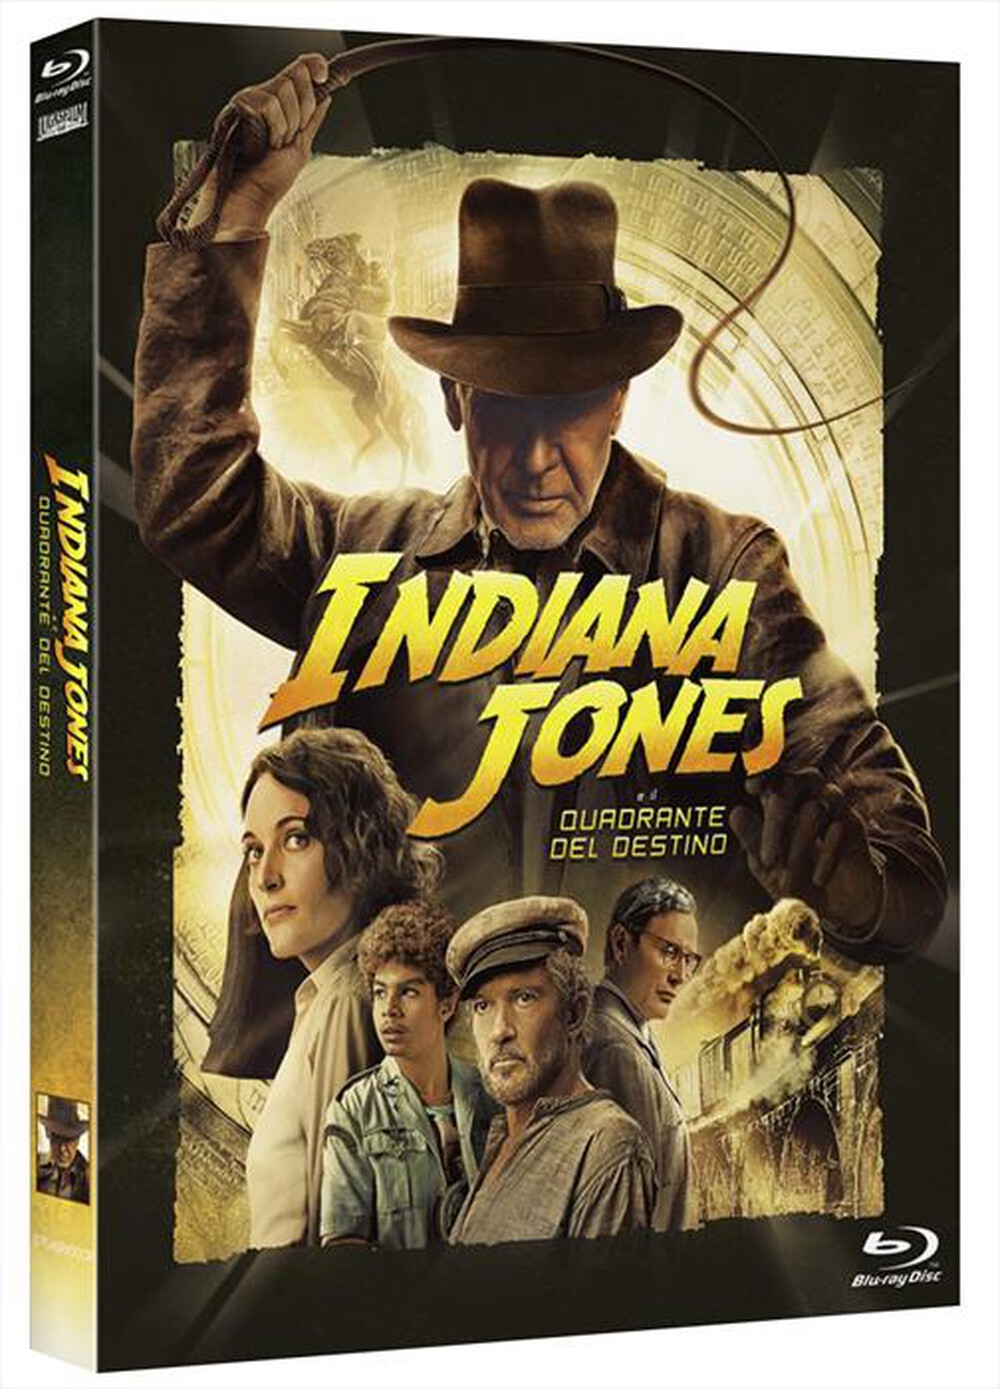 "WALT DISNEY - Indiana Jones E Il Quadrante Del Destino"